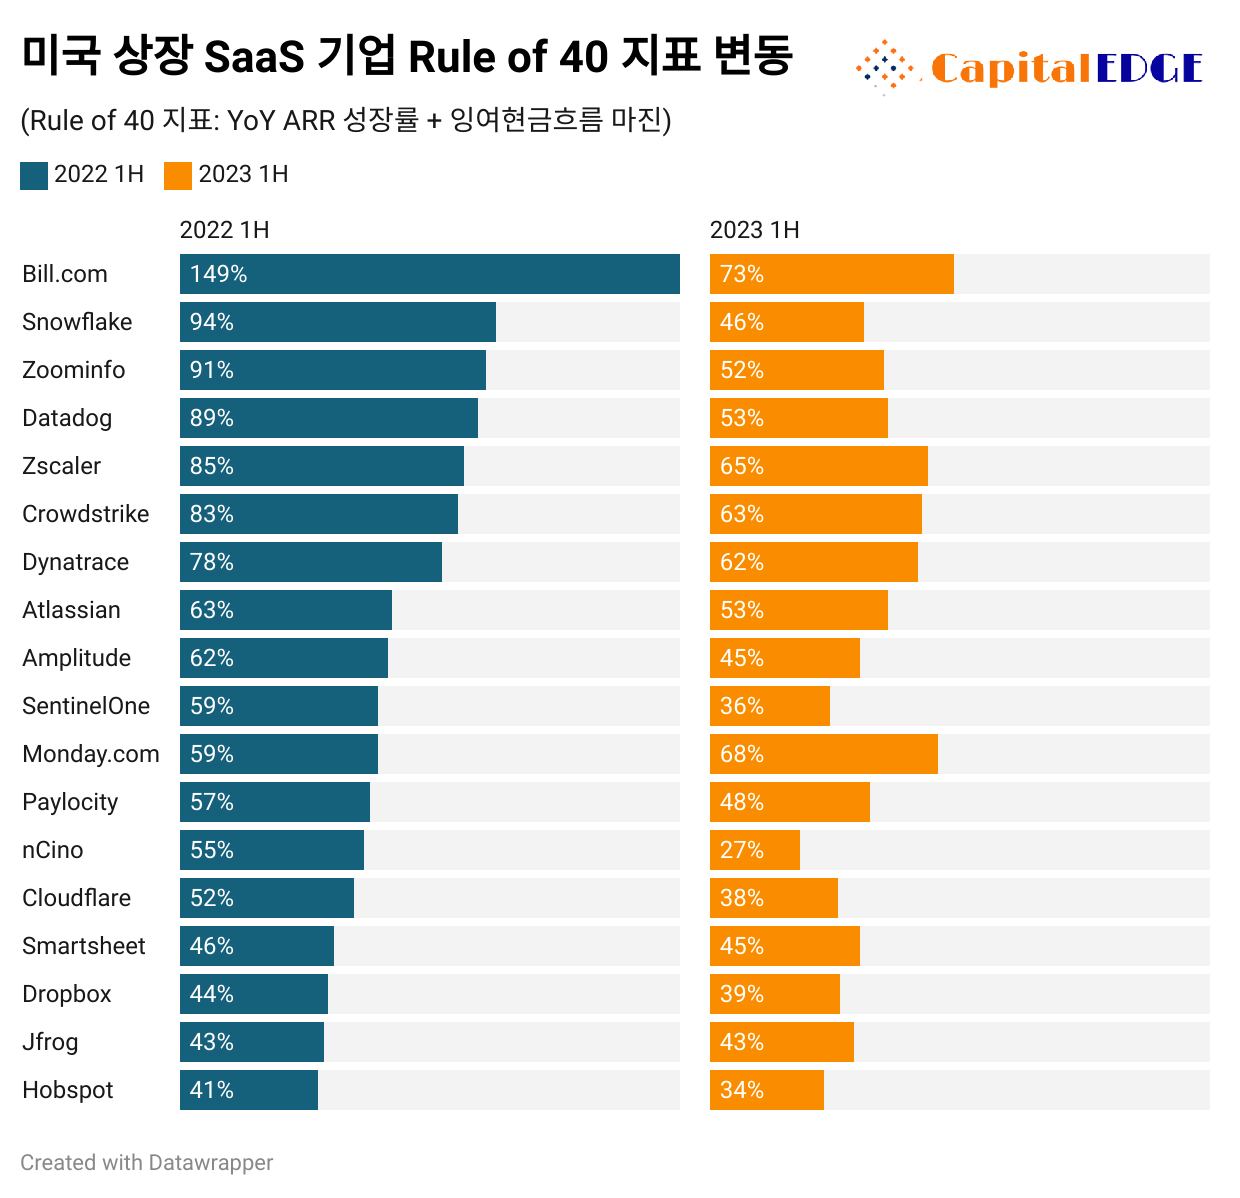 2022년 반기 말 기준 Rule of 40 지표가 높았던 Top 15 SaaS 기업의 1년 뒤 지표 변화